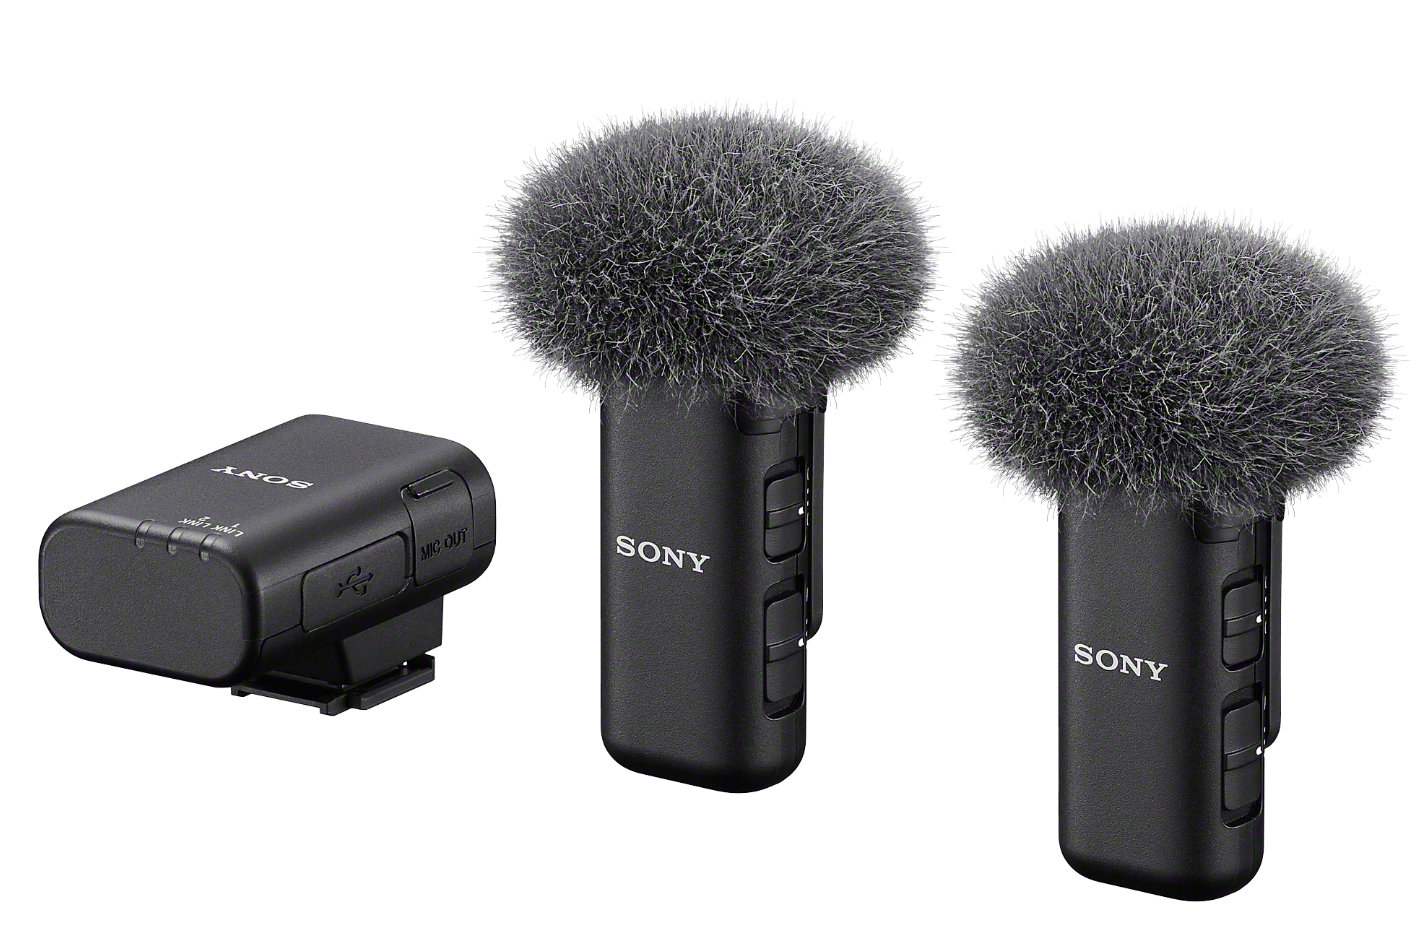 Sony unveils three wireless microphones